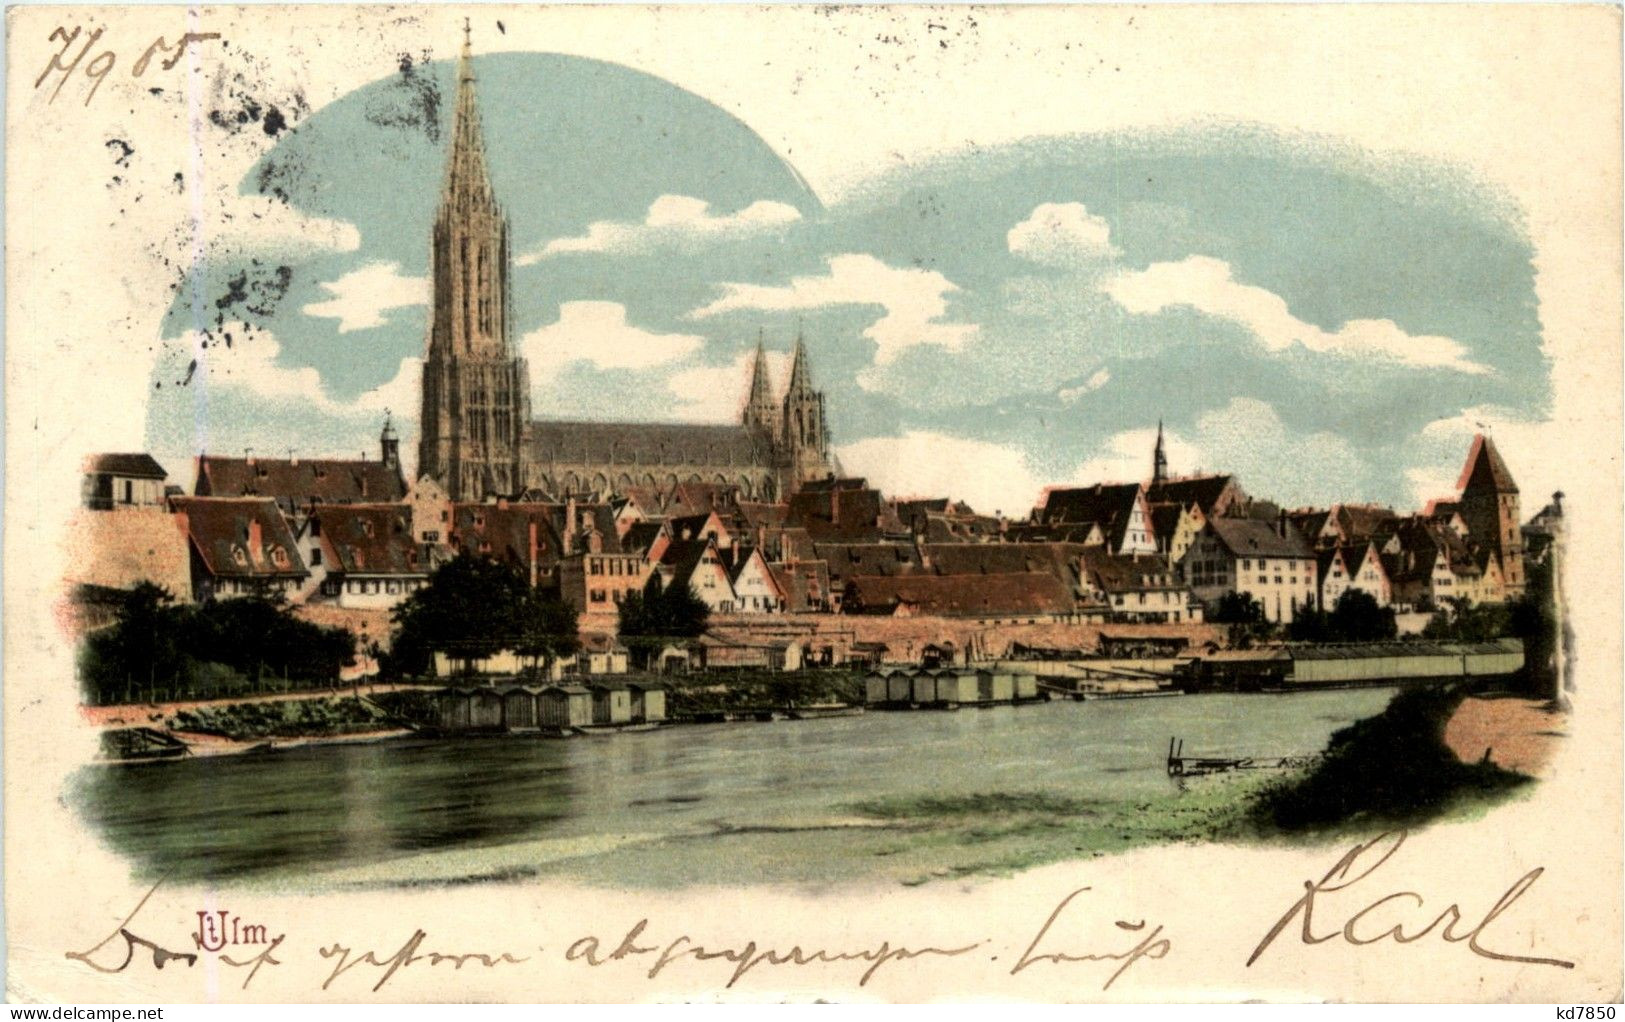 Ulm - Ulm